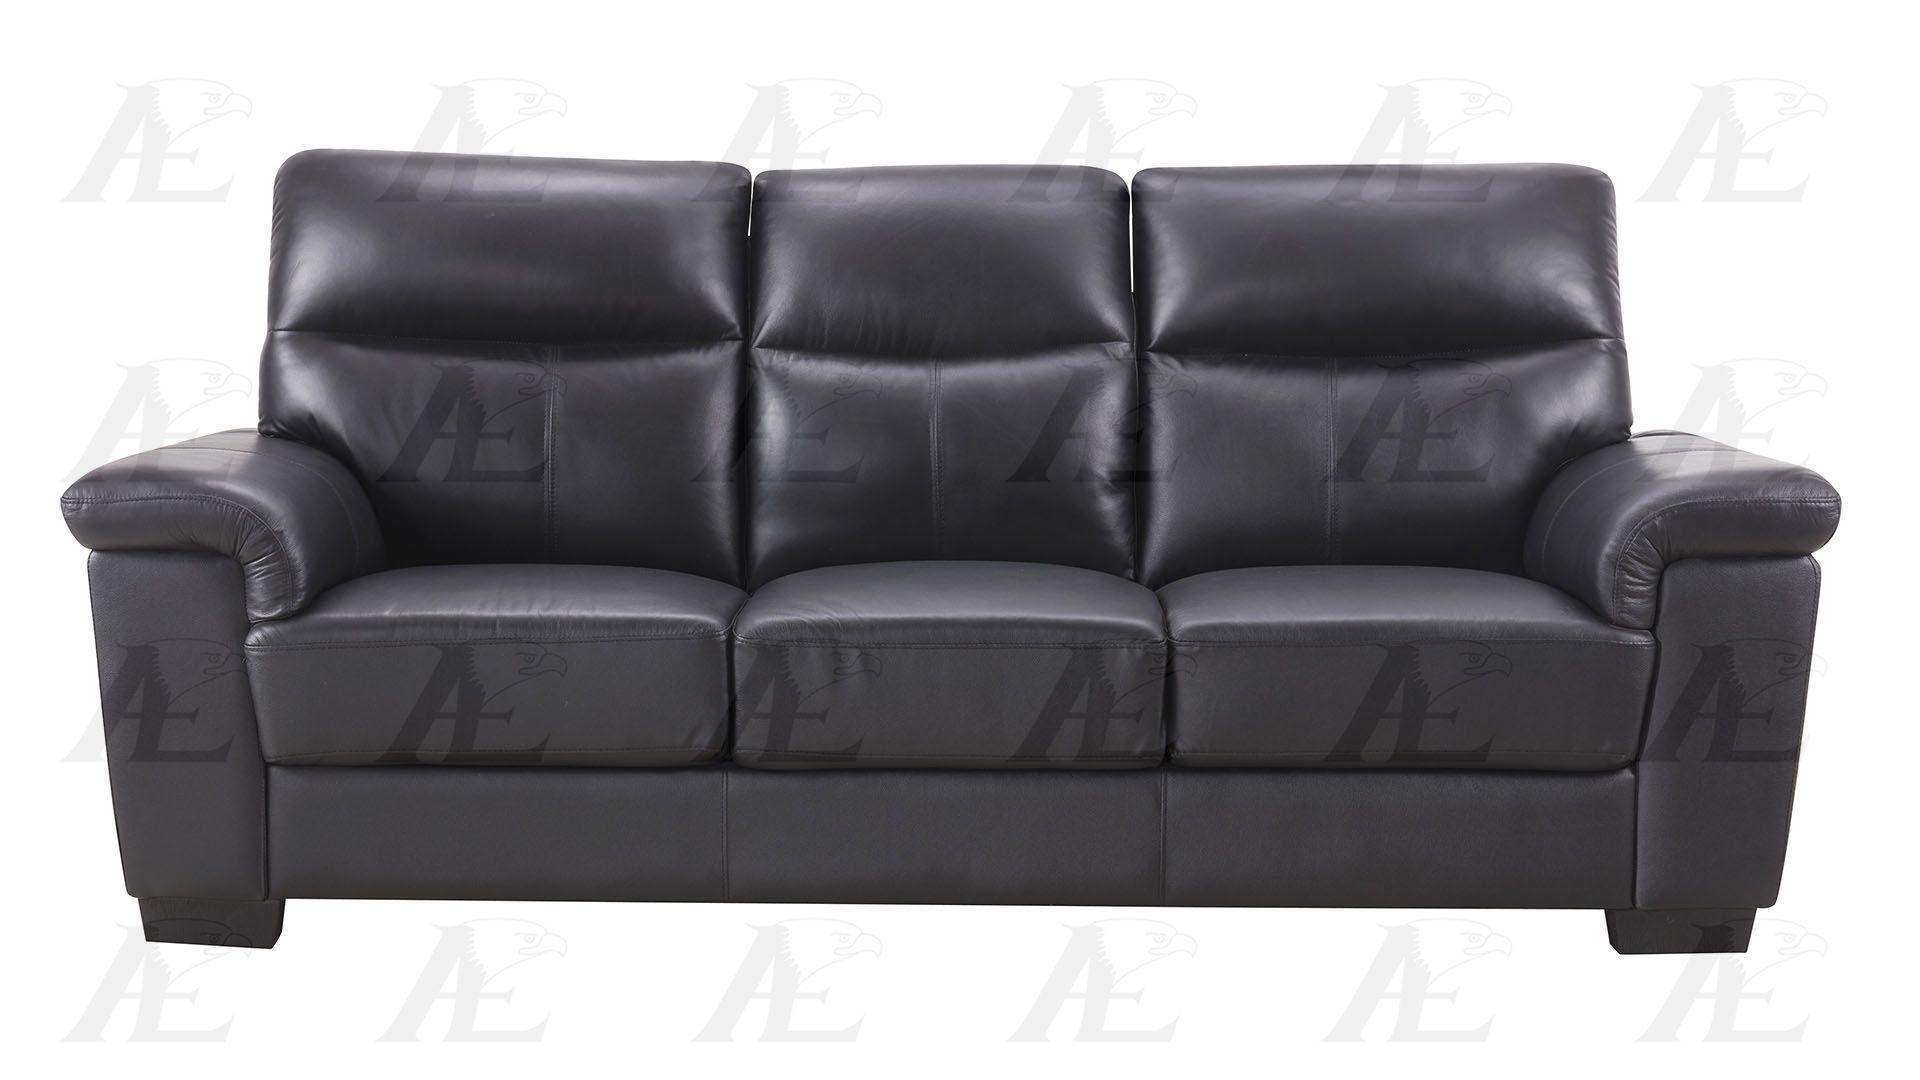 

    
American Eagle Furniture EK515-BK Sofa Set Black EK515-BK-SET-2
